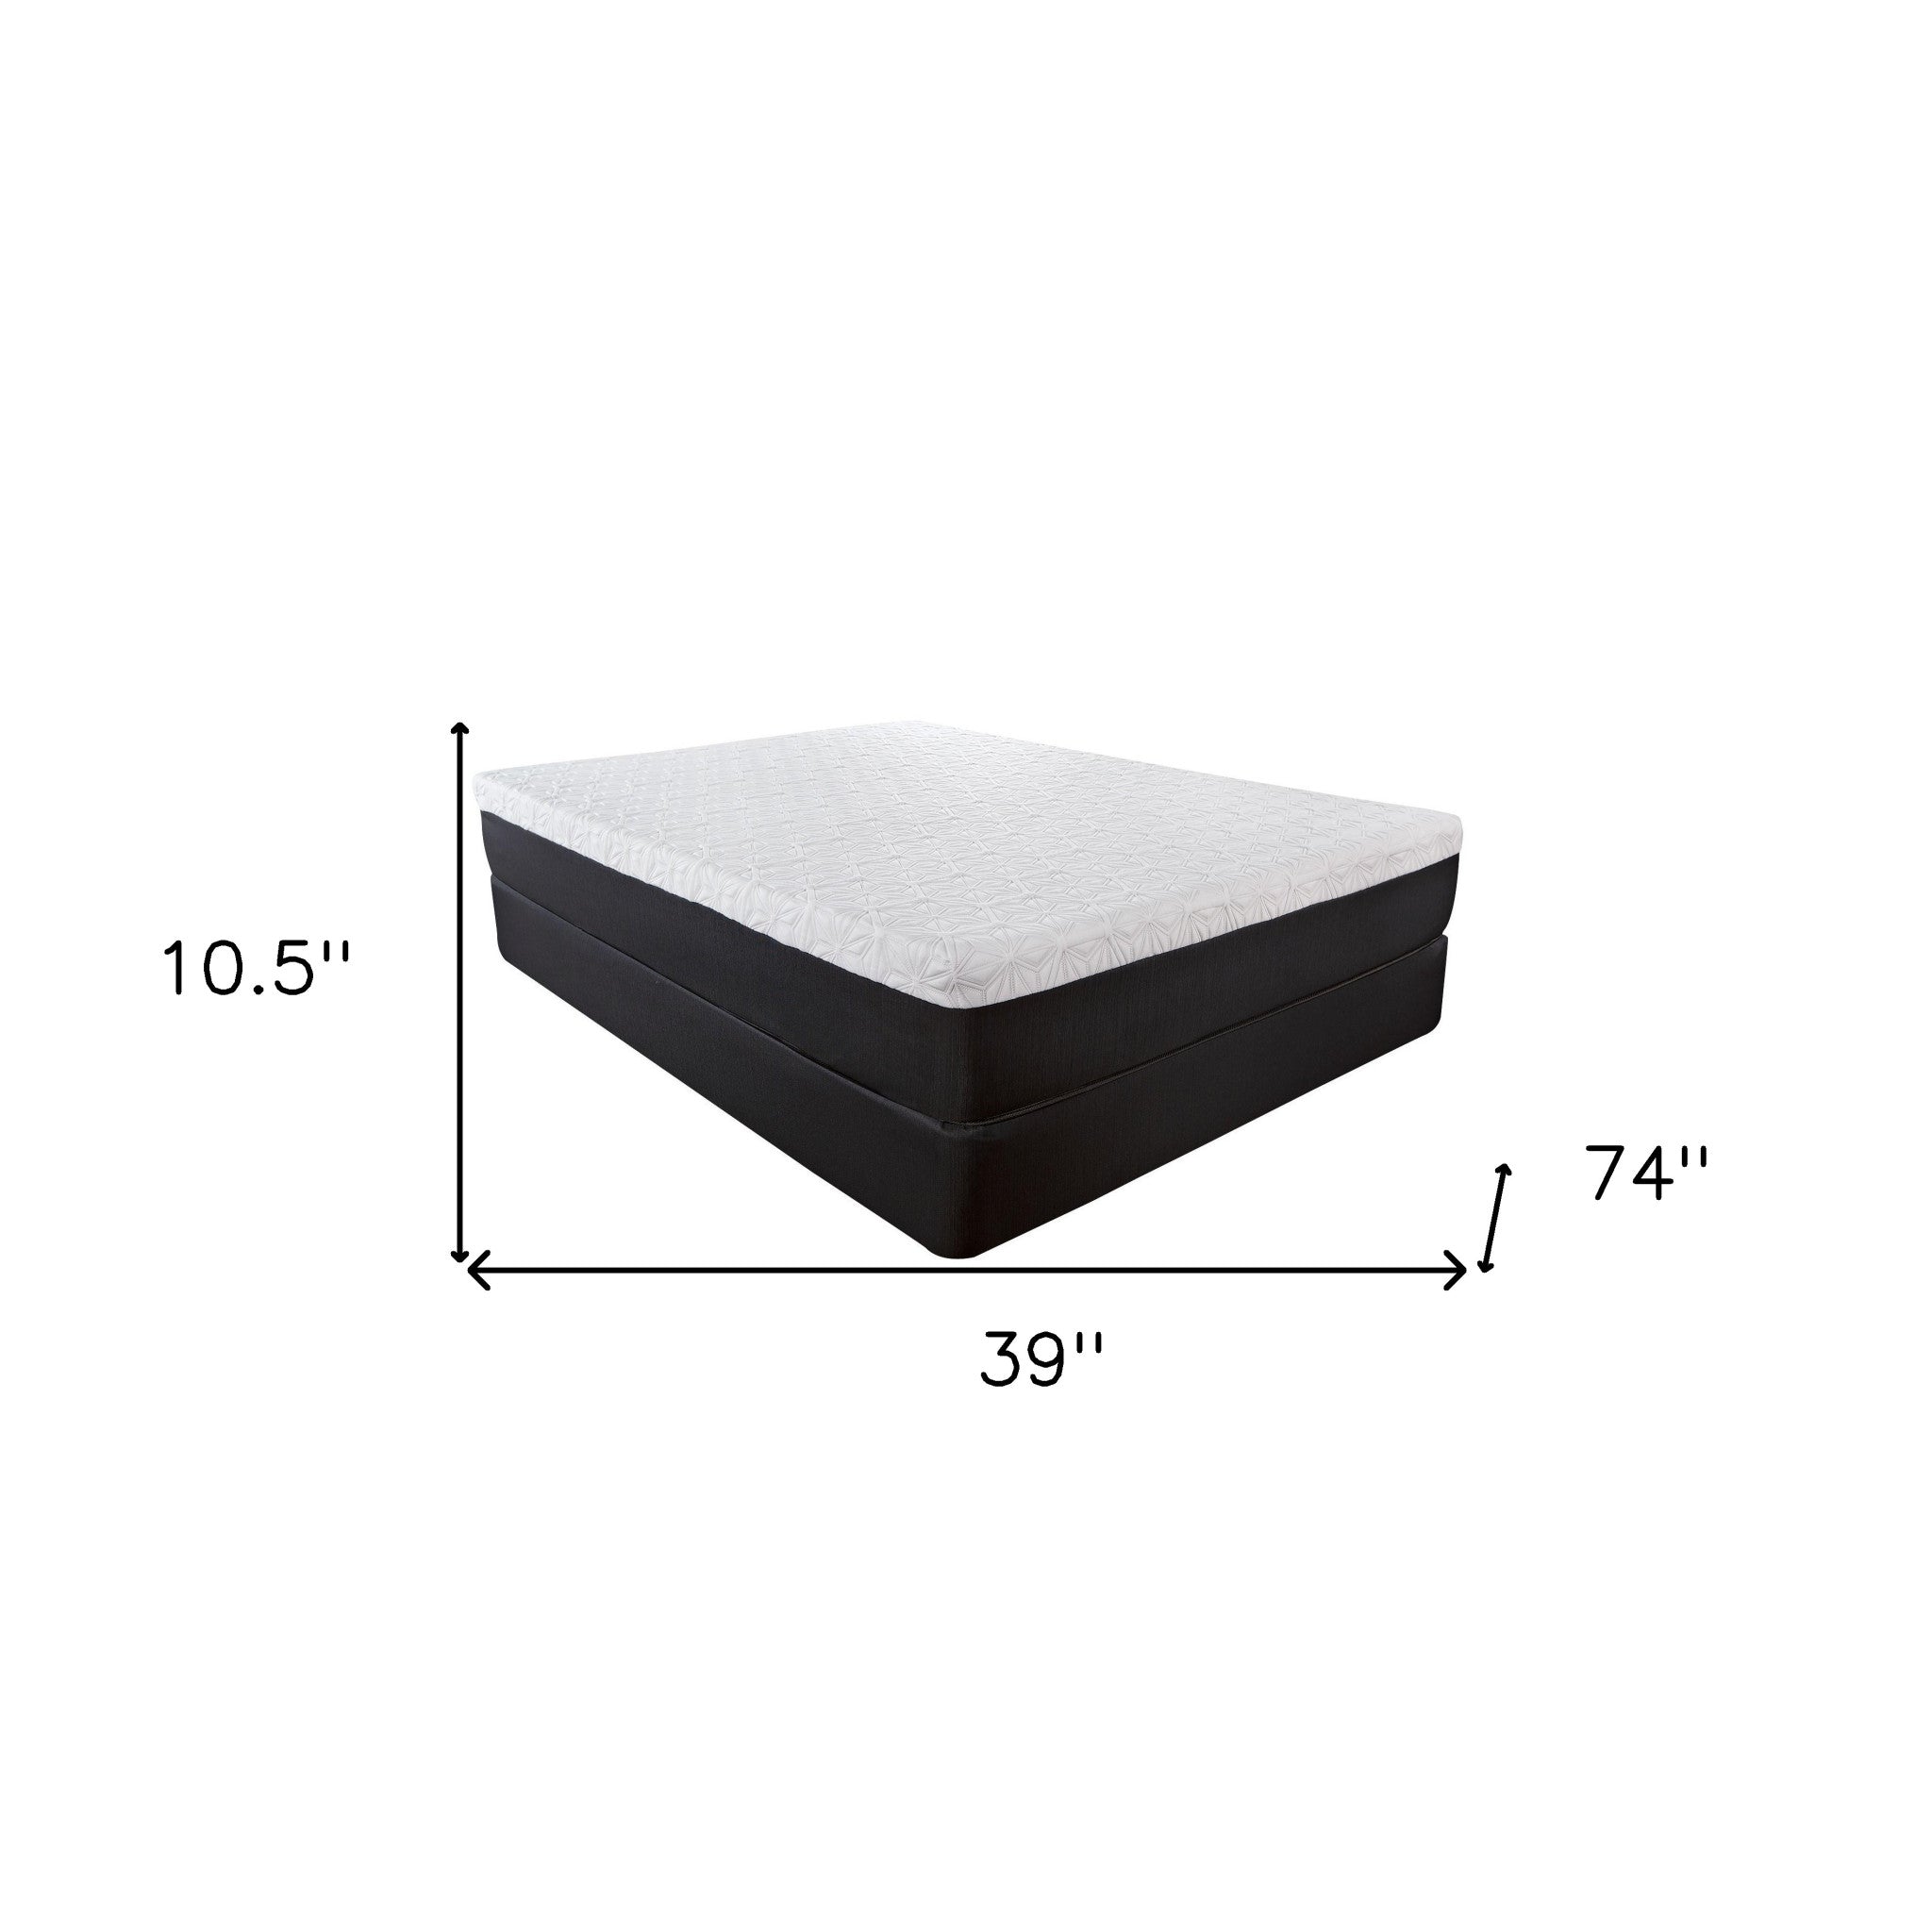 10.5" Lux Gel Infused Memory Foam And High Density Foam Mattress Twin